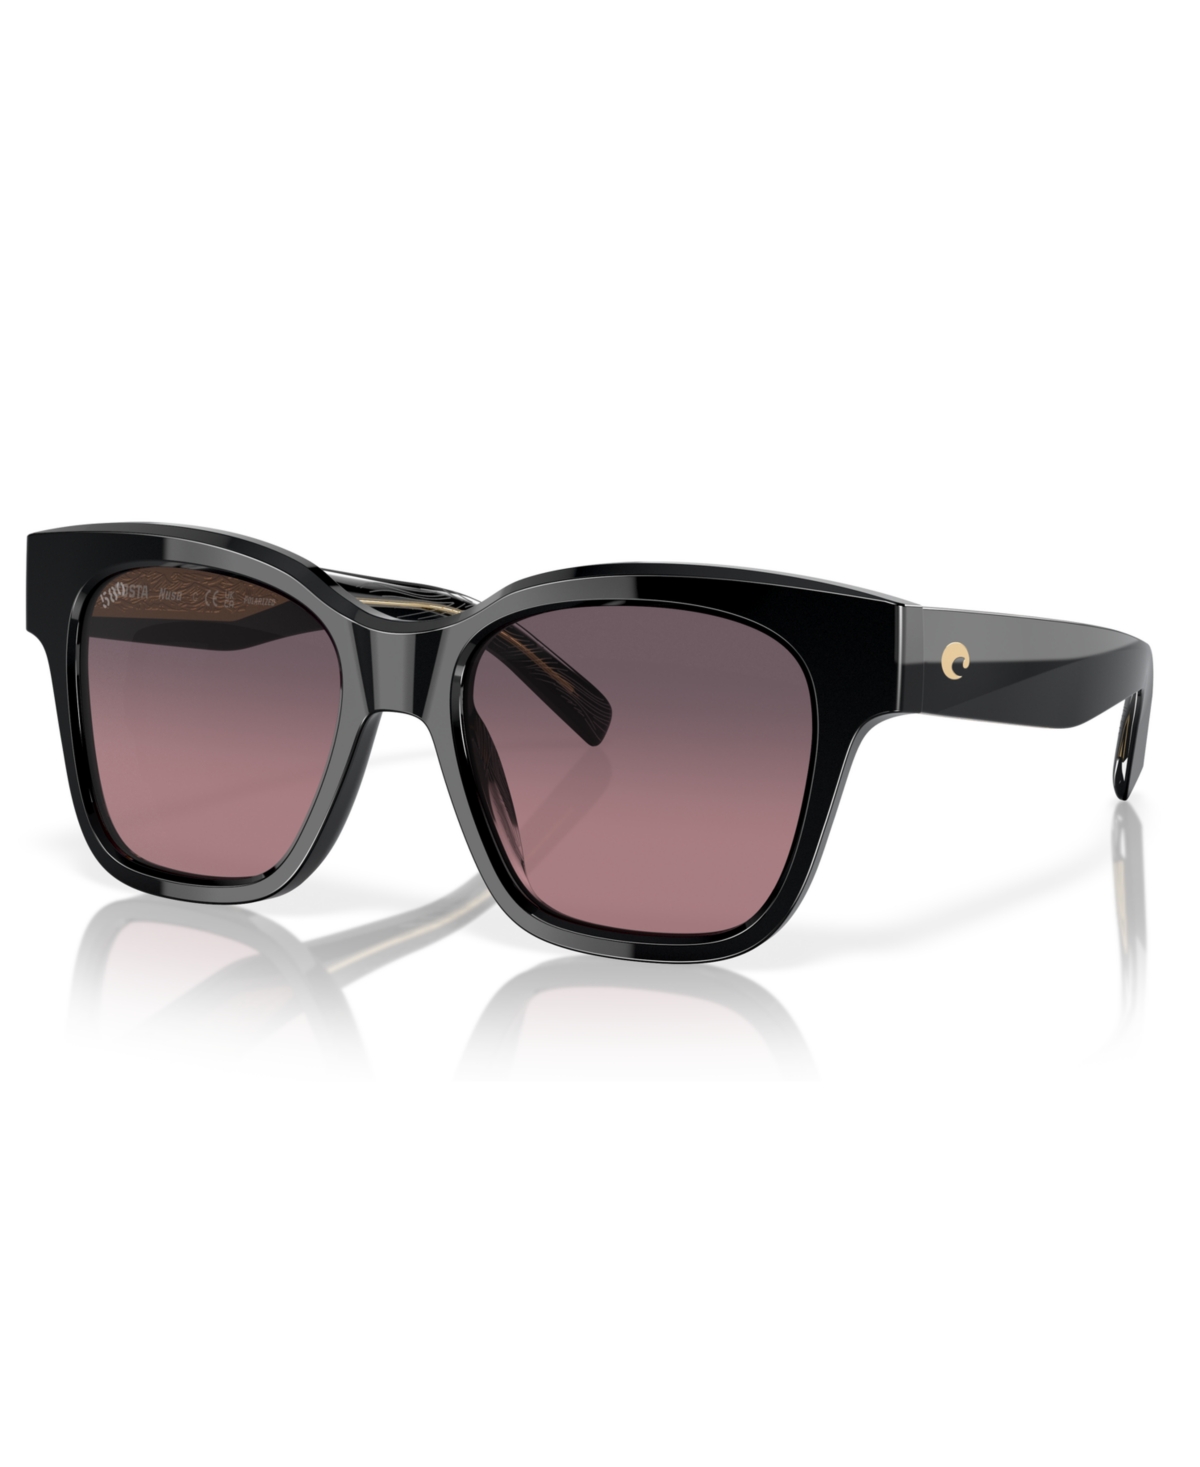 Costa Del Mar Women's Polarized Sunglasses, Nusa 6s2016 In Black